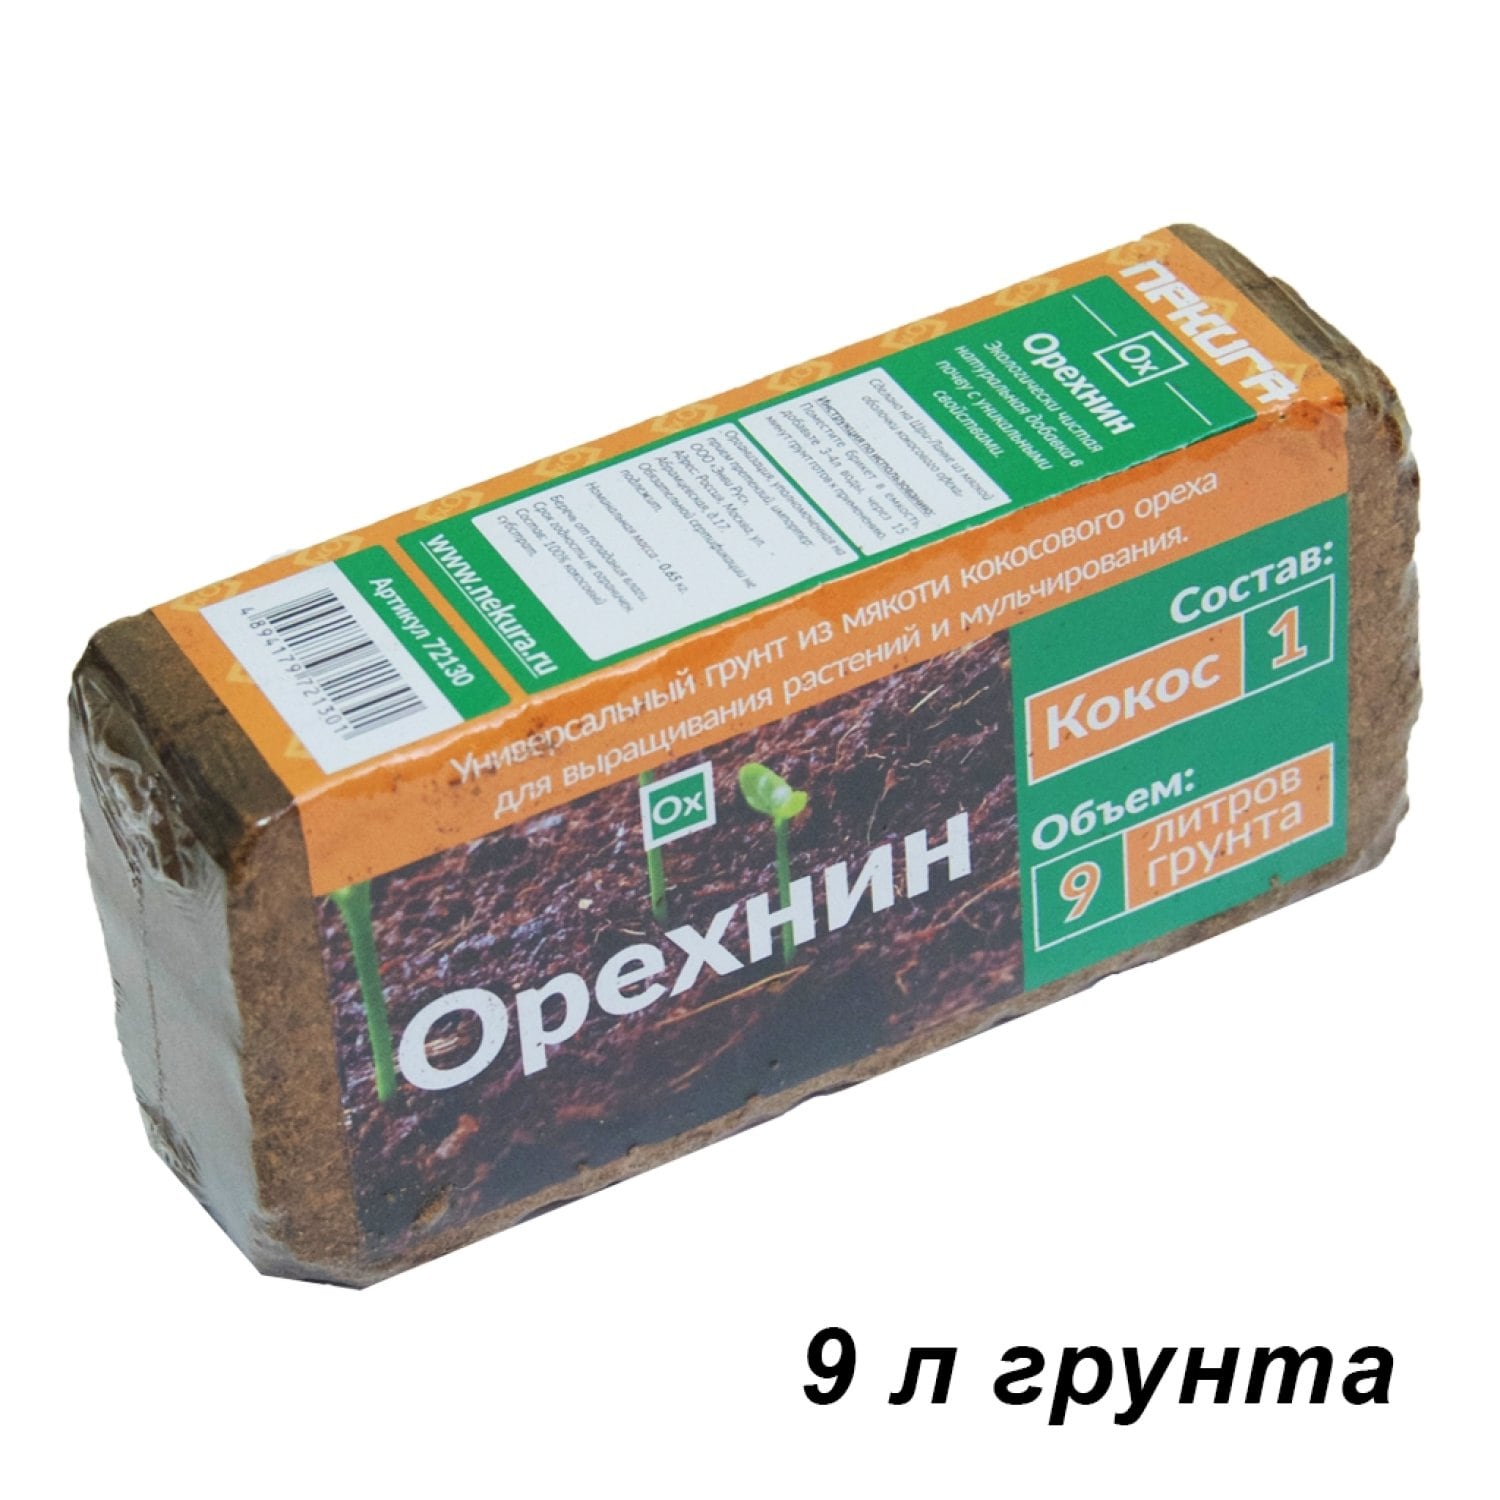 Кокосовый субстрат Орехнин-1 брикет 9 литров